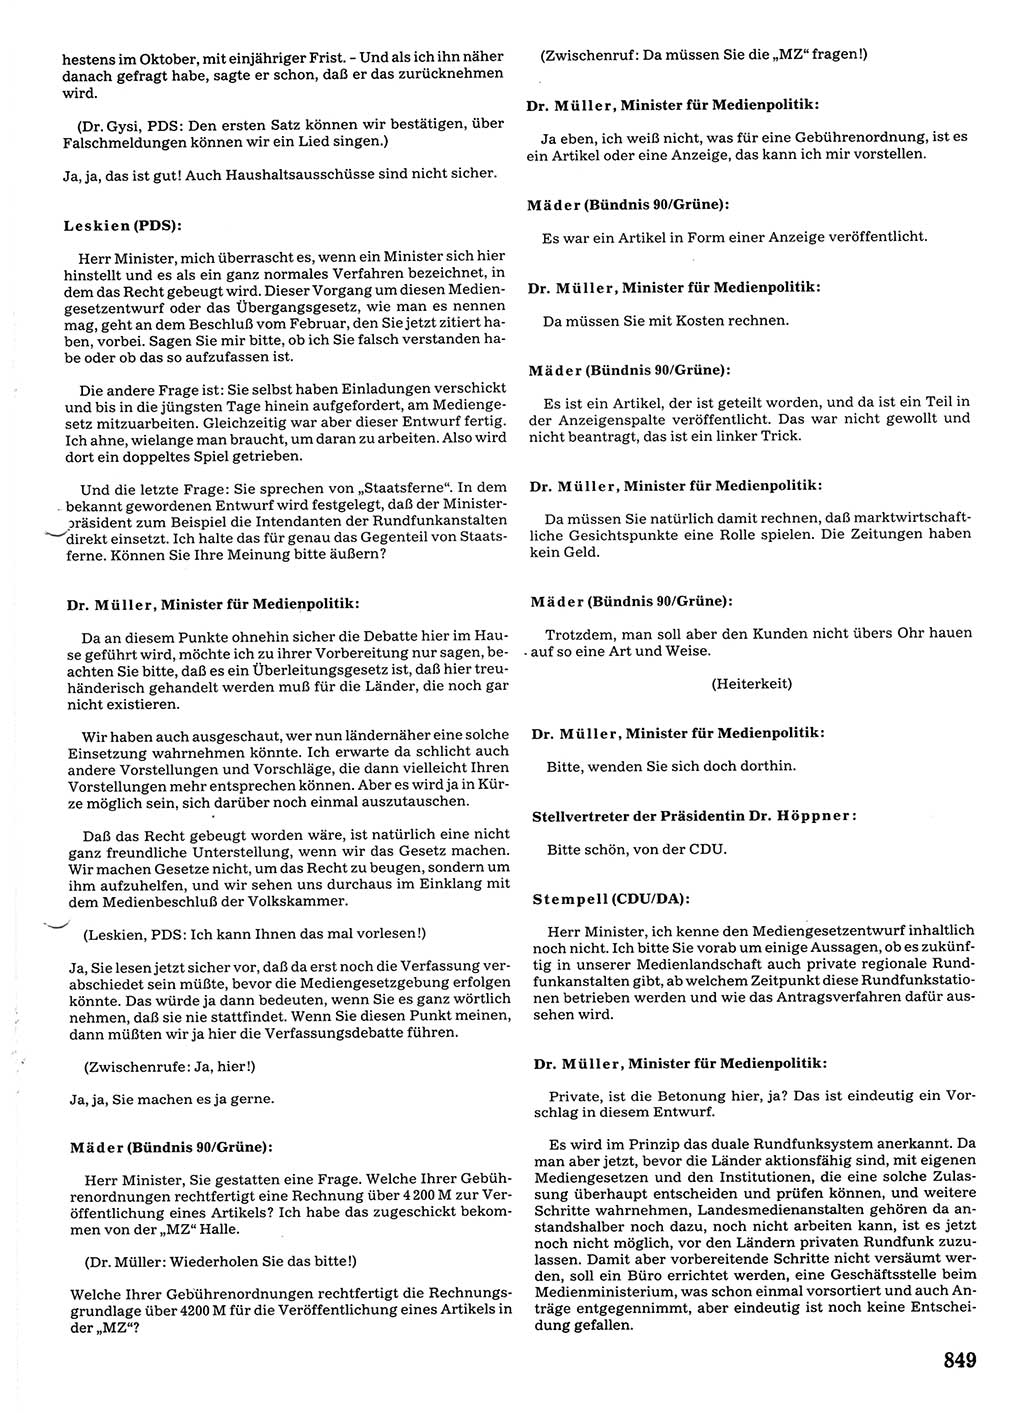 Tagungen der Volkskammer (VK) der Deutschen Demokratischen Republik (DDR), 10. Wahlperiode 1990, Seite 849 (VK. DDR 10. WP. 1990, Prot. Tg. 1-38, 5.4.-2.10.1990, S. 849)